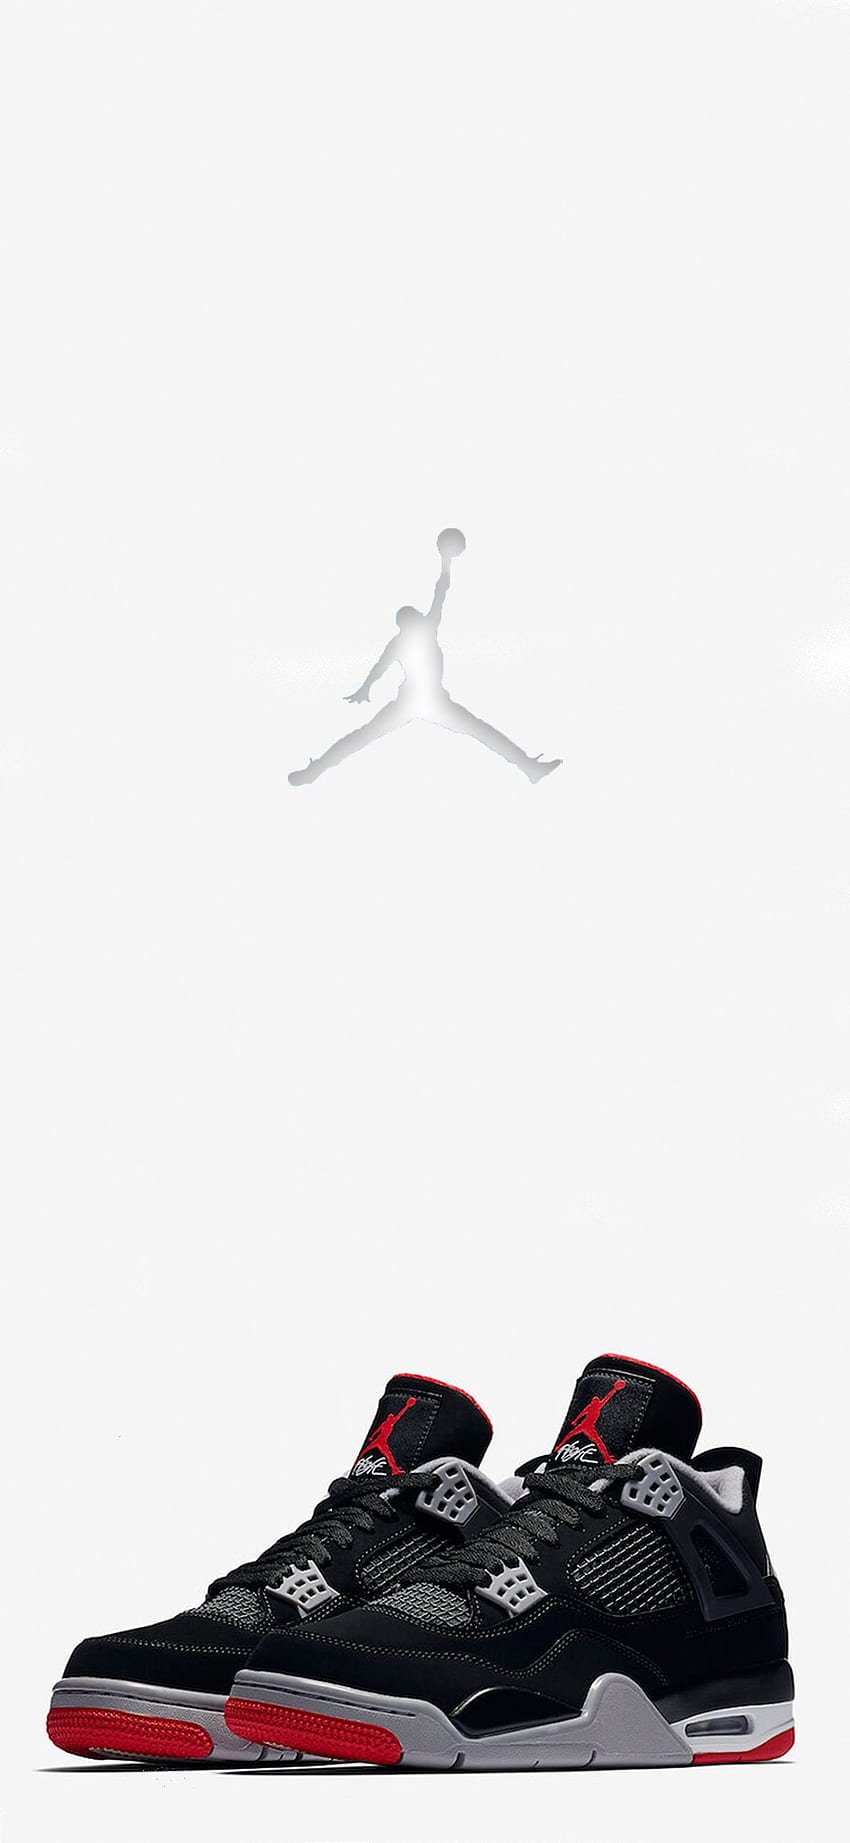 Air jordan 4 wallpaper  Disegni di scarpe Nike scarpe uomo Sfondi per  iphone